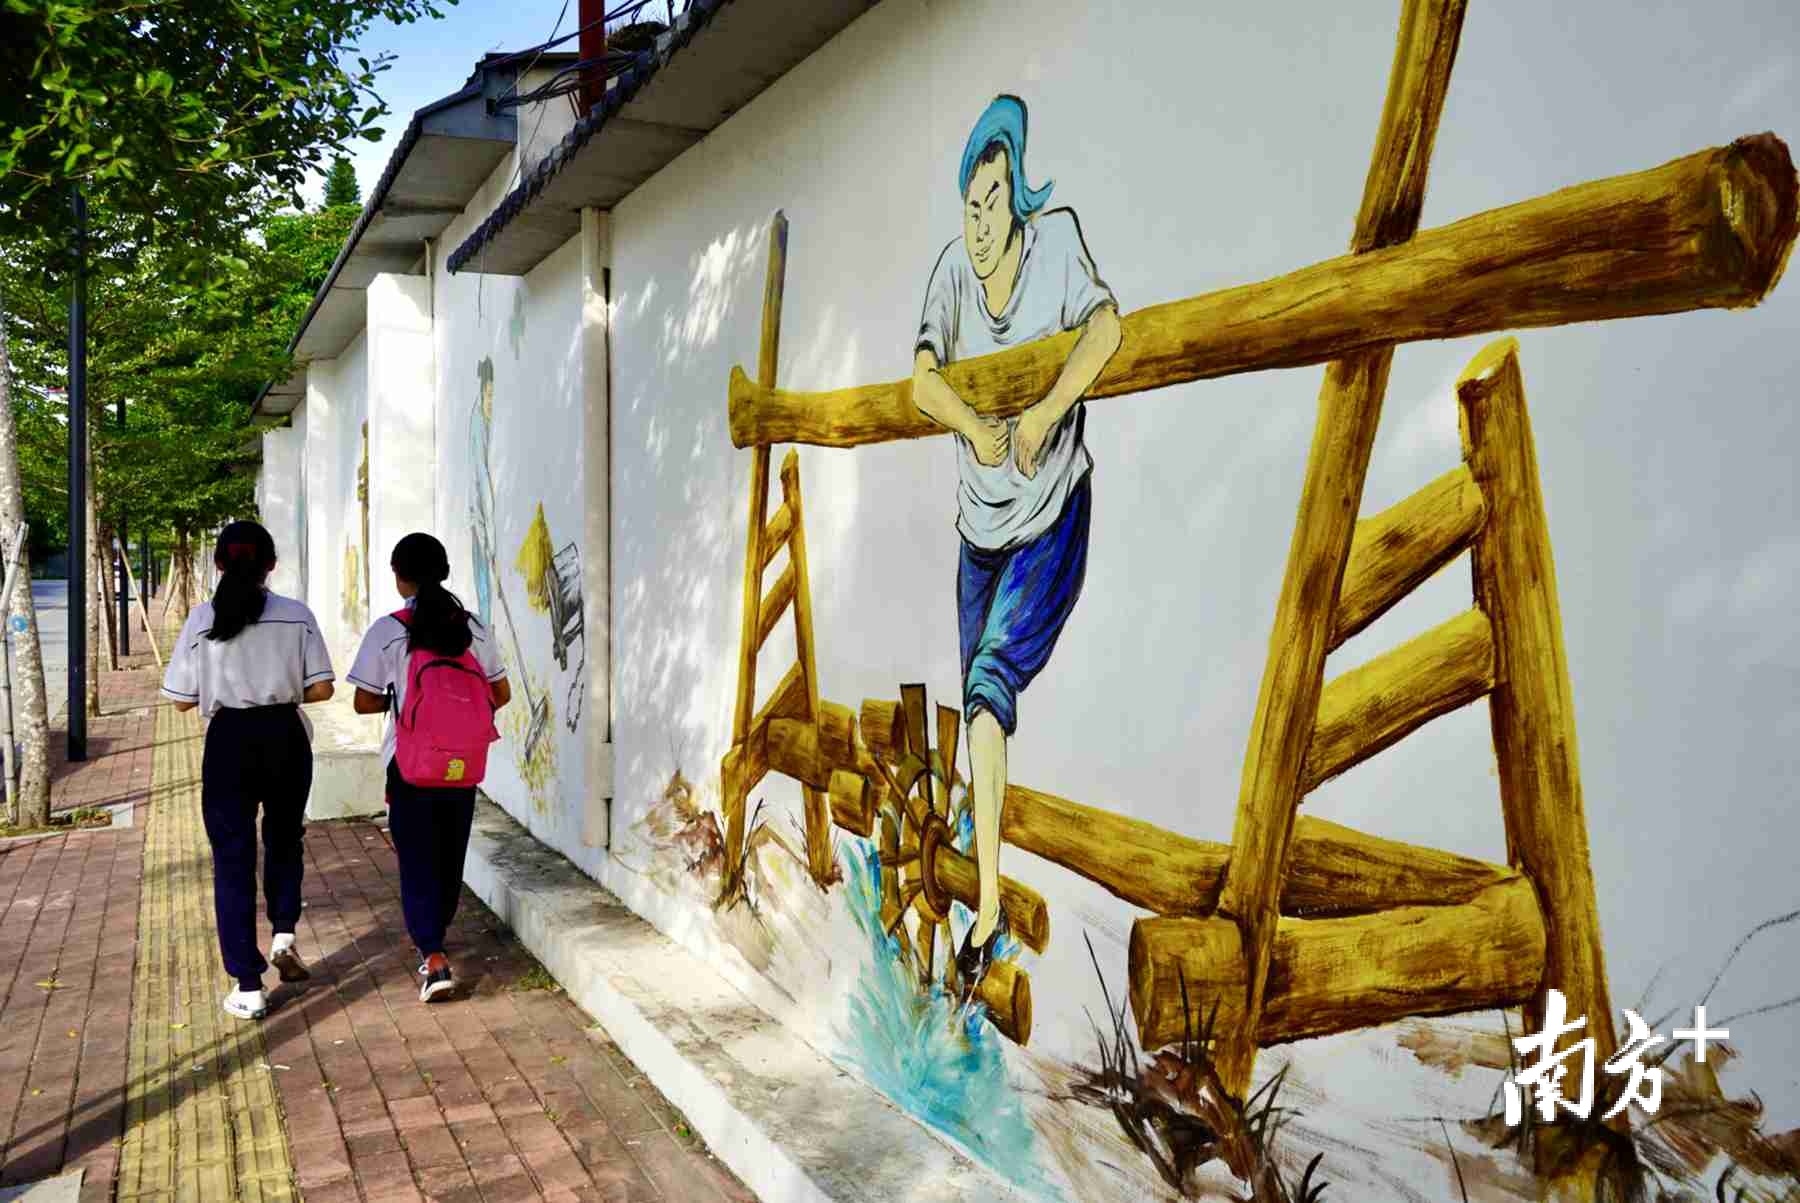 在旦家园不少村道，可见具有潮汕特色文化的墙画。